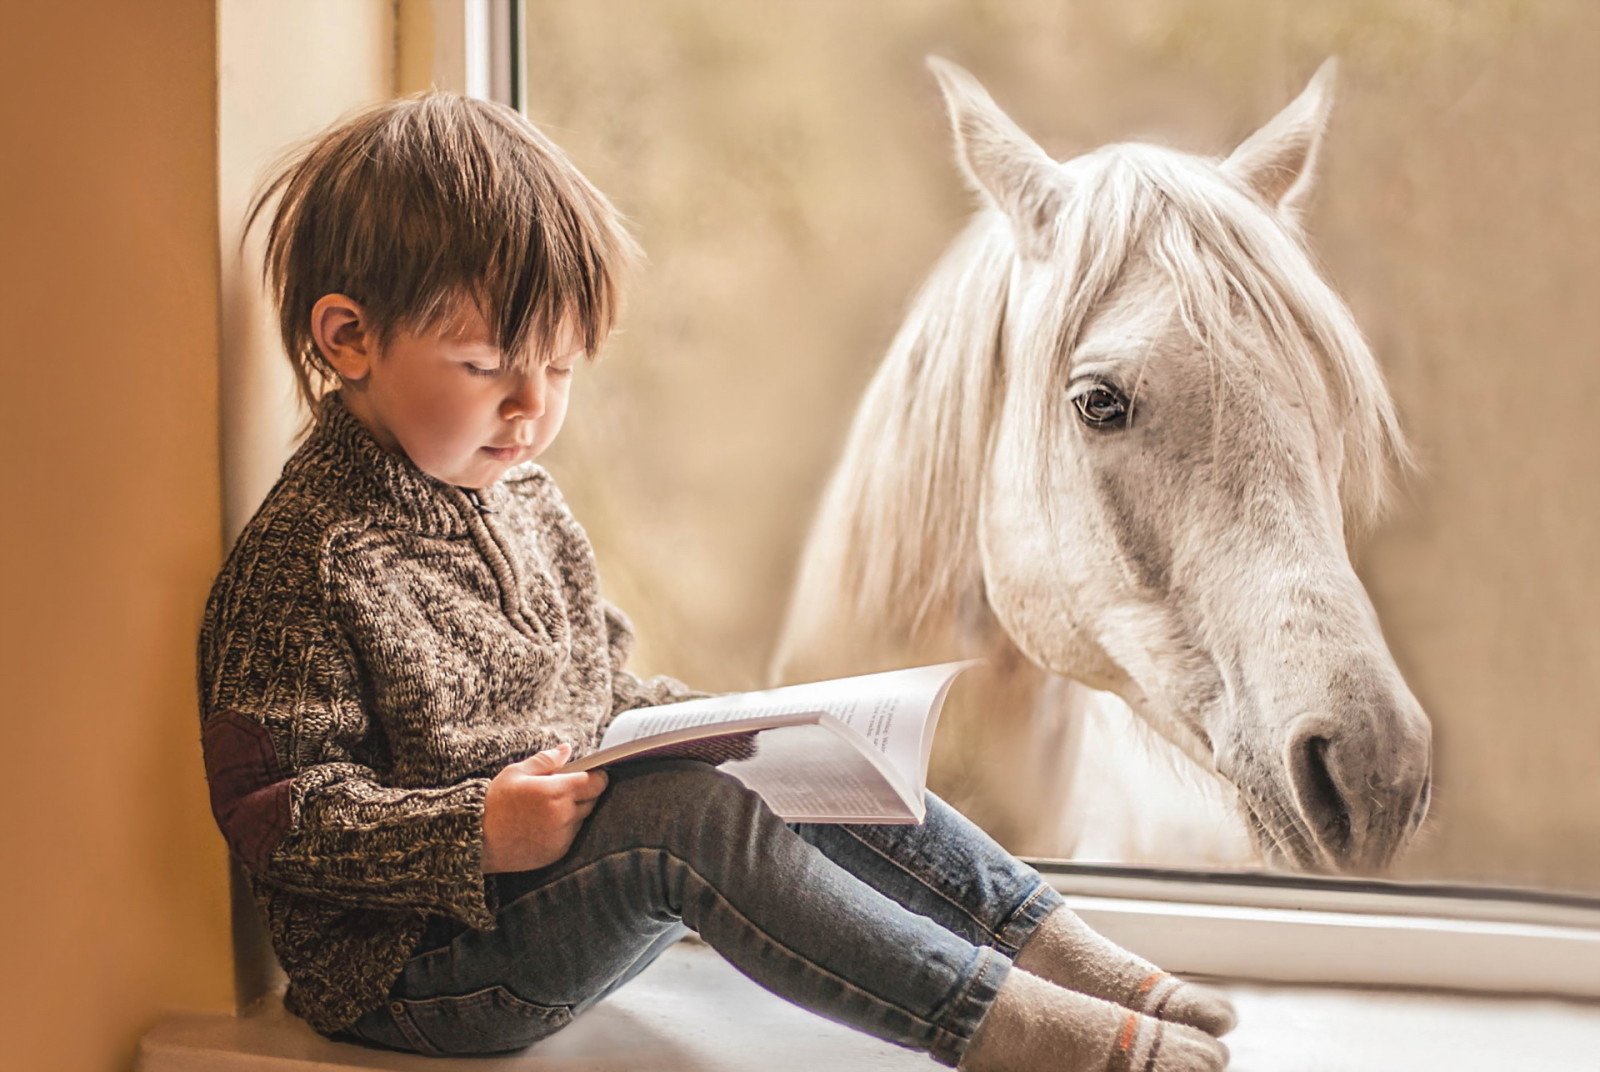 kuda, buku, jendela, anak laki-laki